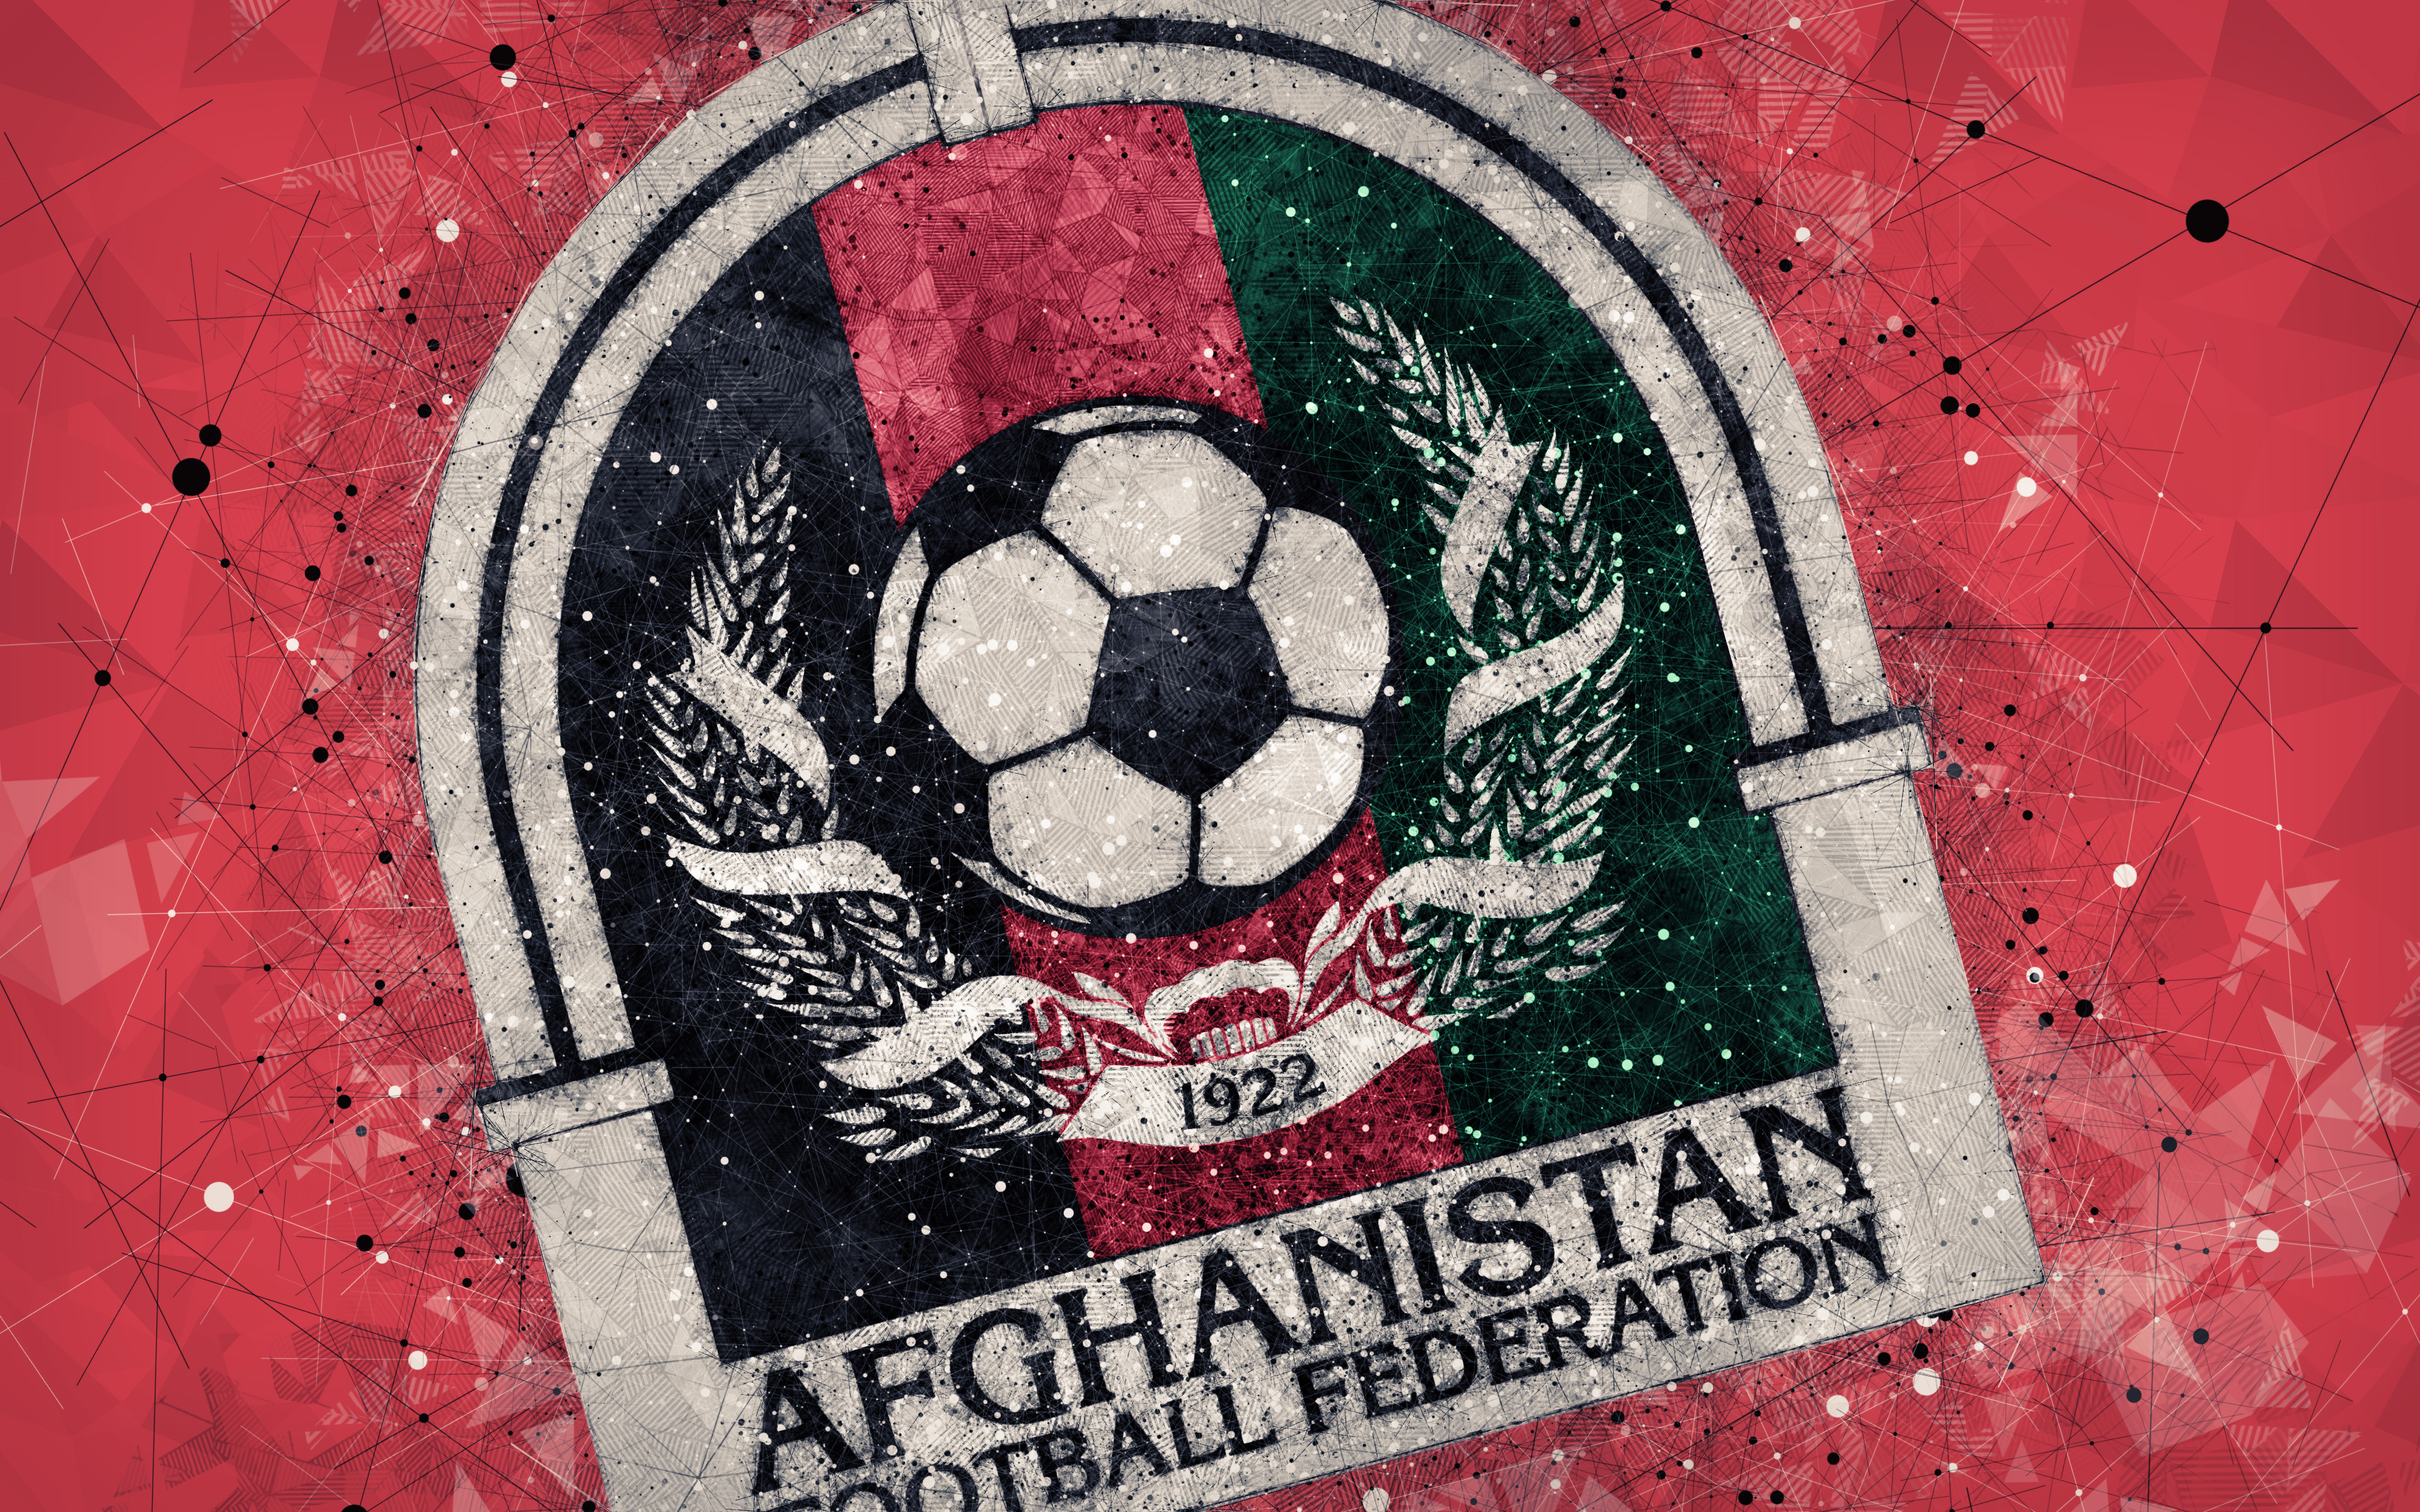 Afghanistan Emblem Logo Soccer 3840x2400